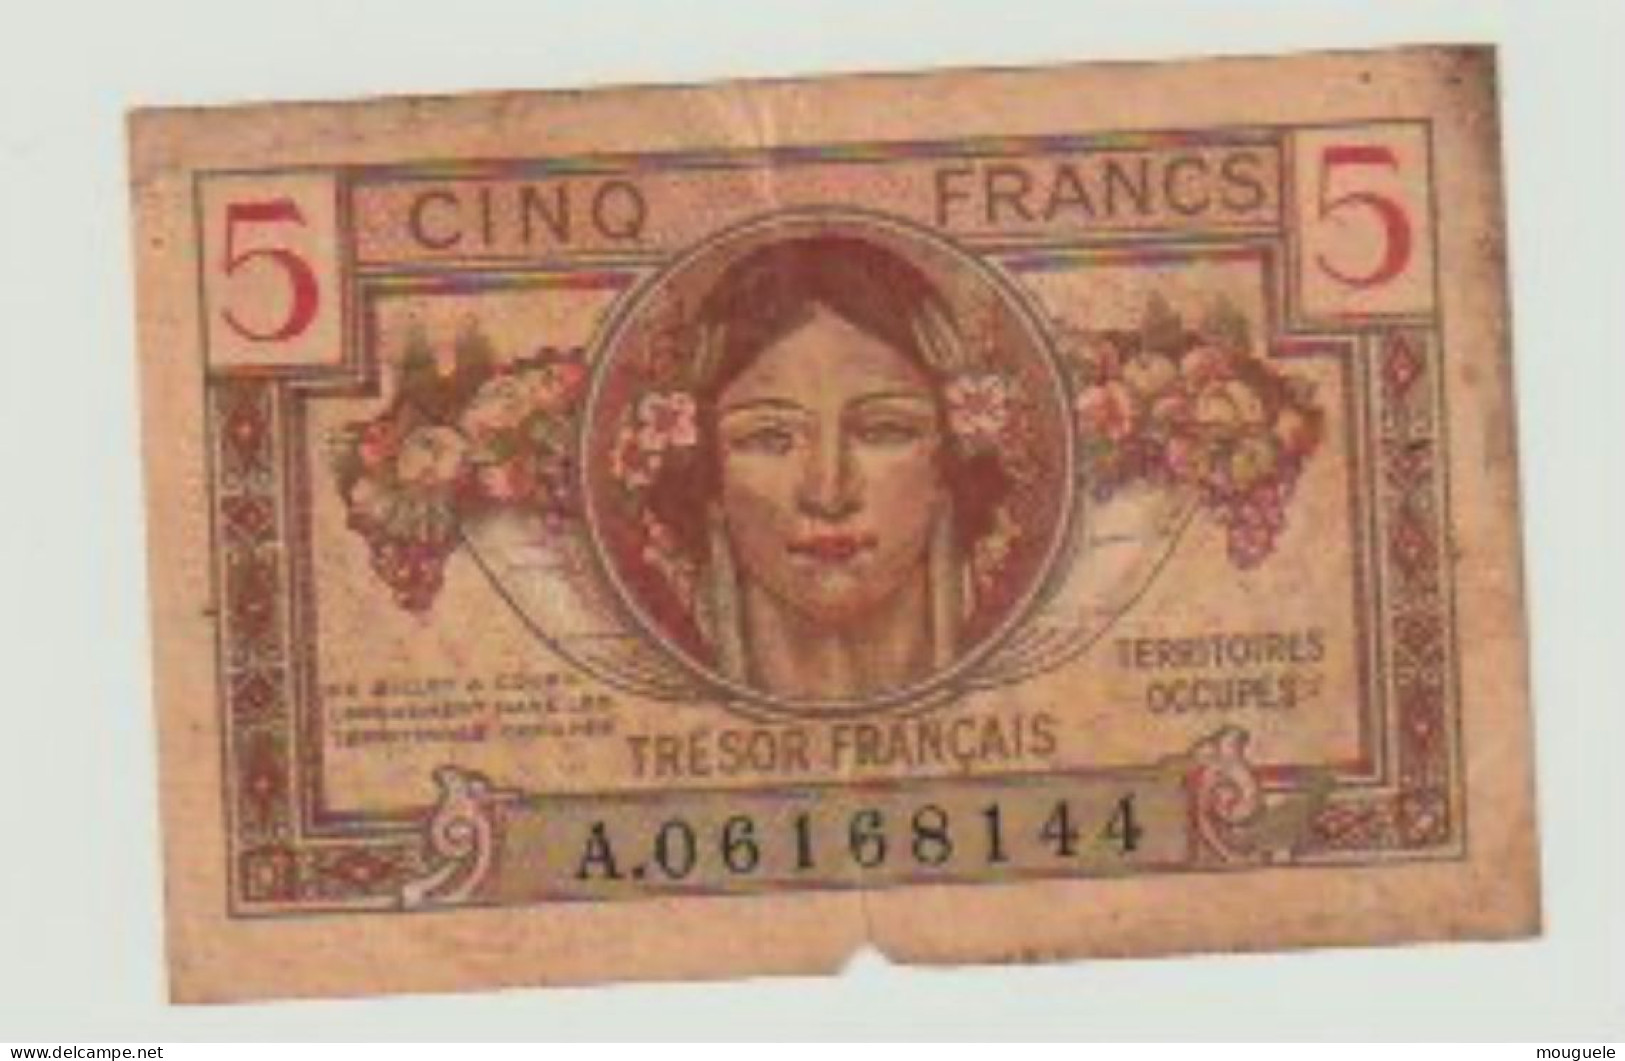 5 Francs Trésor Français - 1947 French Treasury